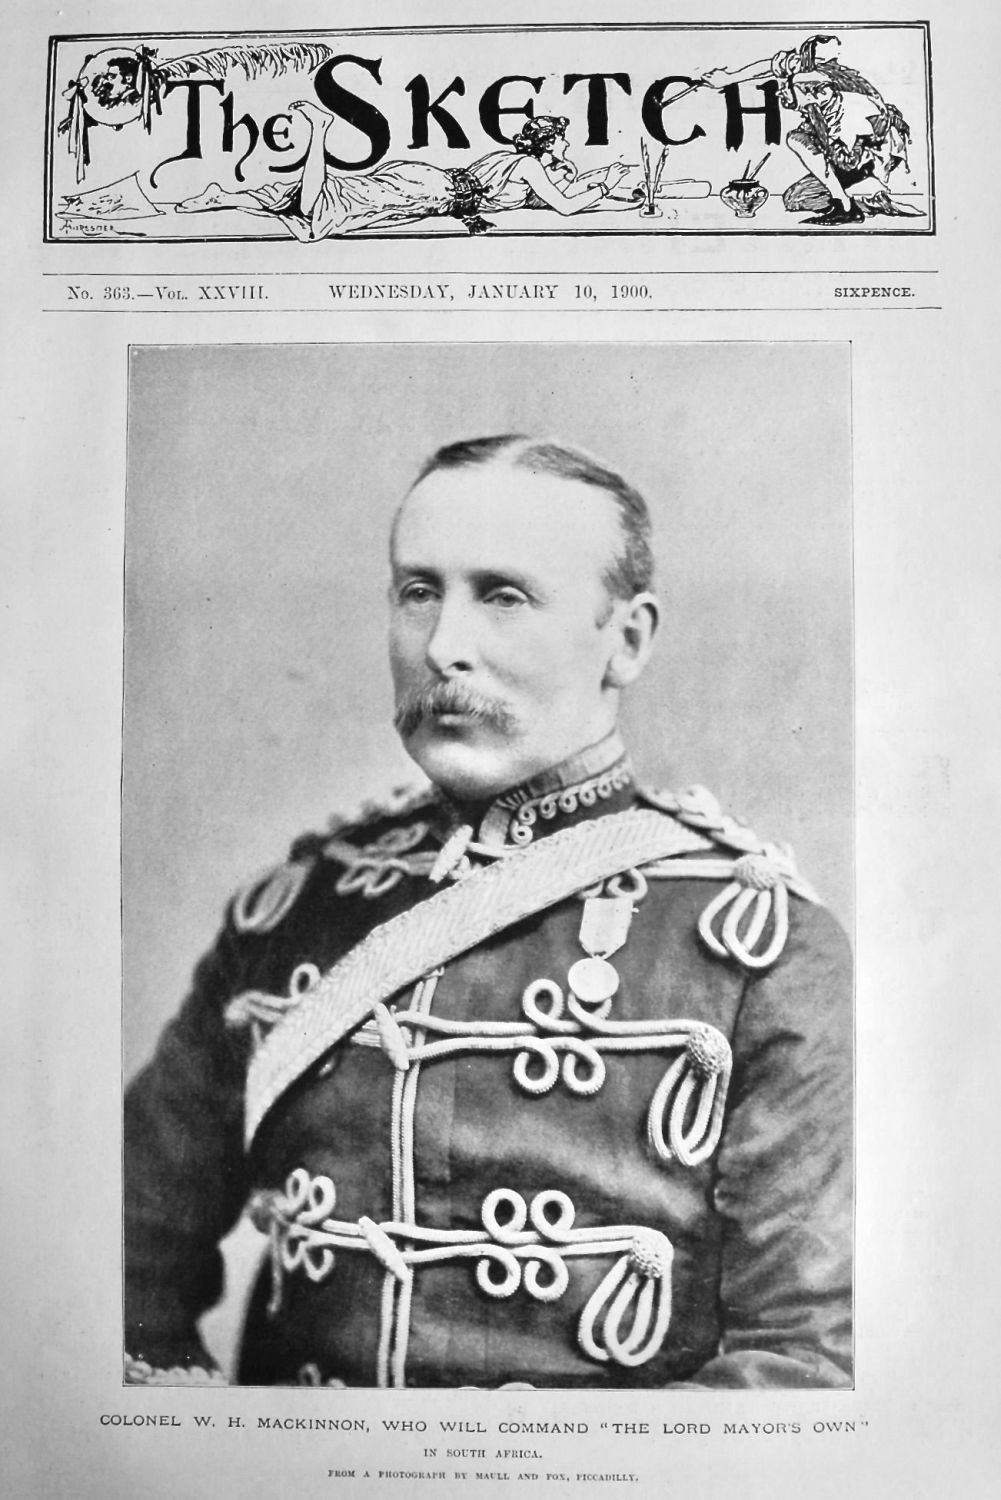 Colonel W. H. Mackinnon, who will Command 